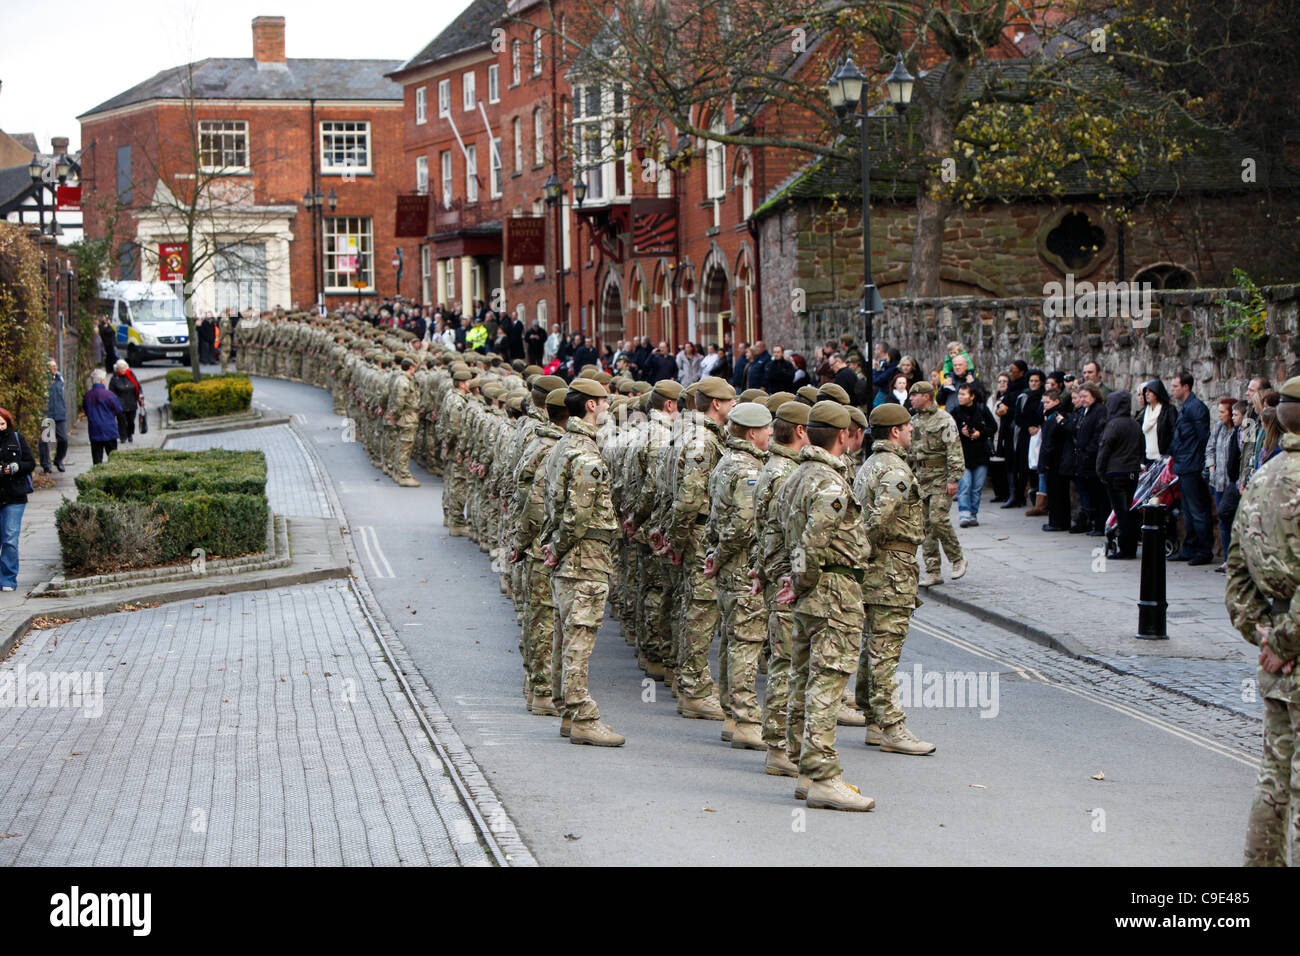 29.11.2011. Soldaten aus dem 3. Bataillon Mercian Regiment in Tamworth, nach ihrem Marsch durch die Stadt. Die Soldaten waren in der Stadt um ihre Rückkehr von einem Einsatz in Afghanistan zu feiern. Stockfoto